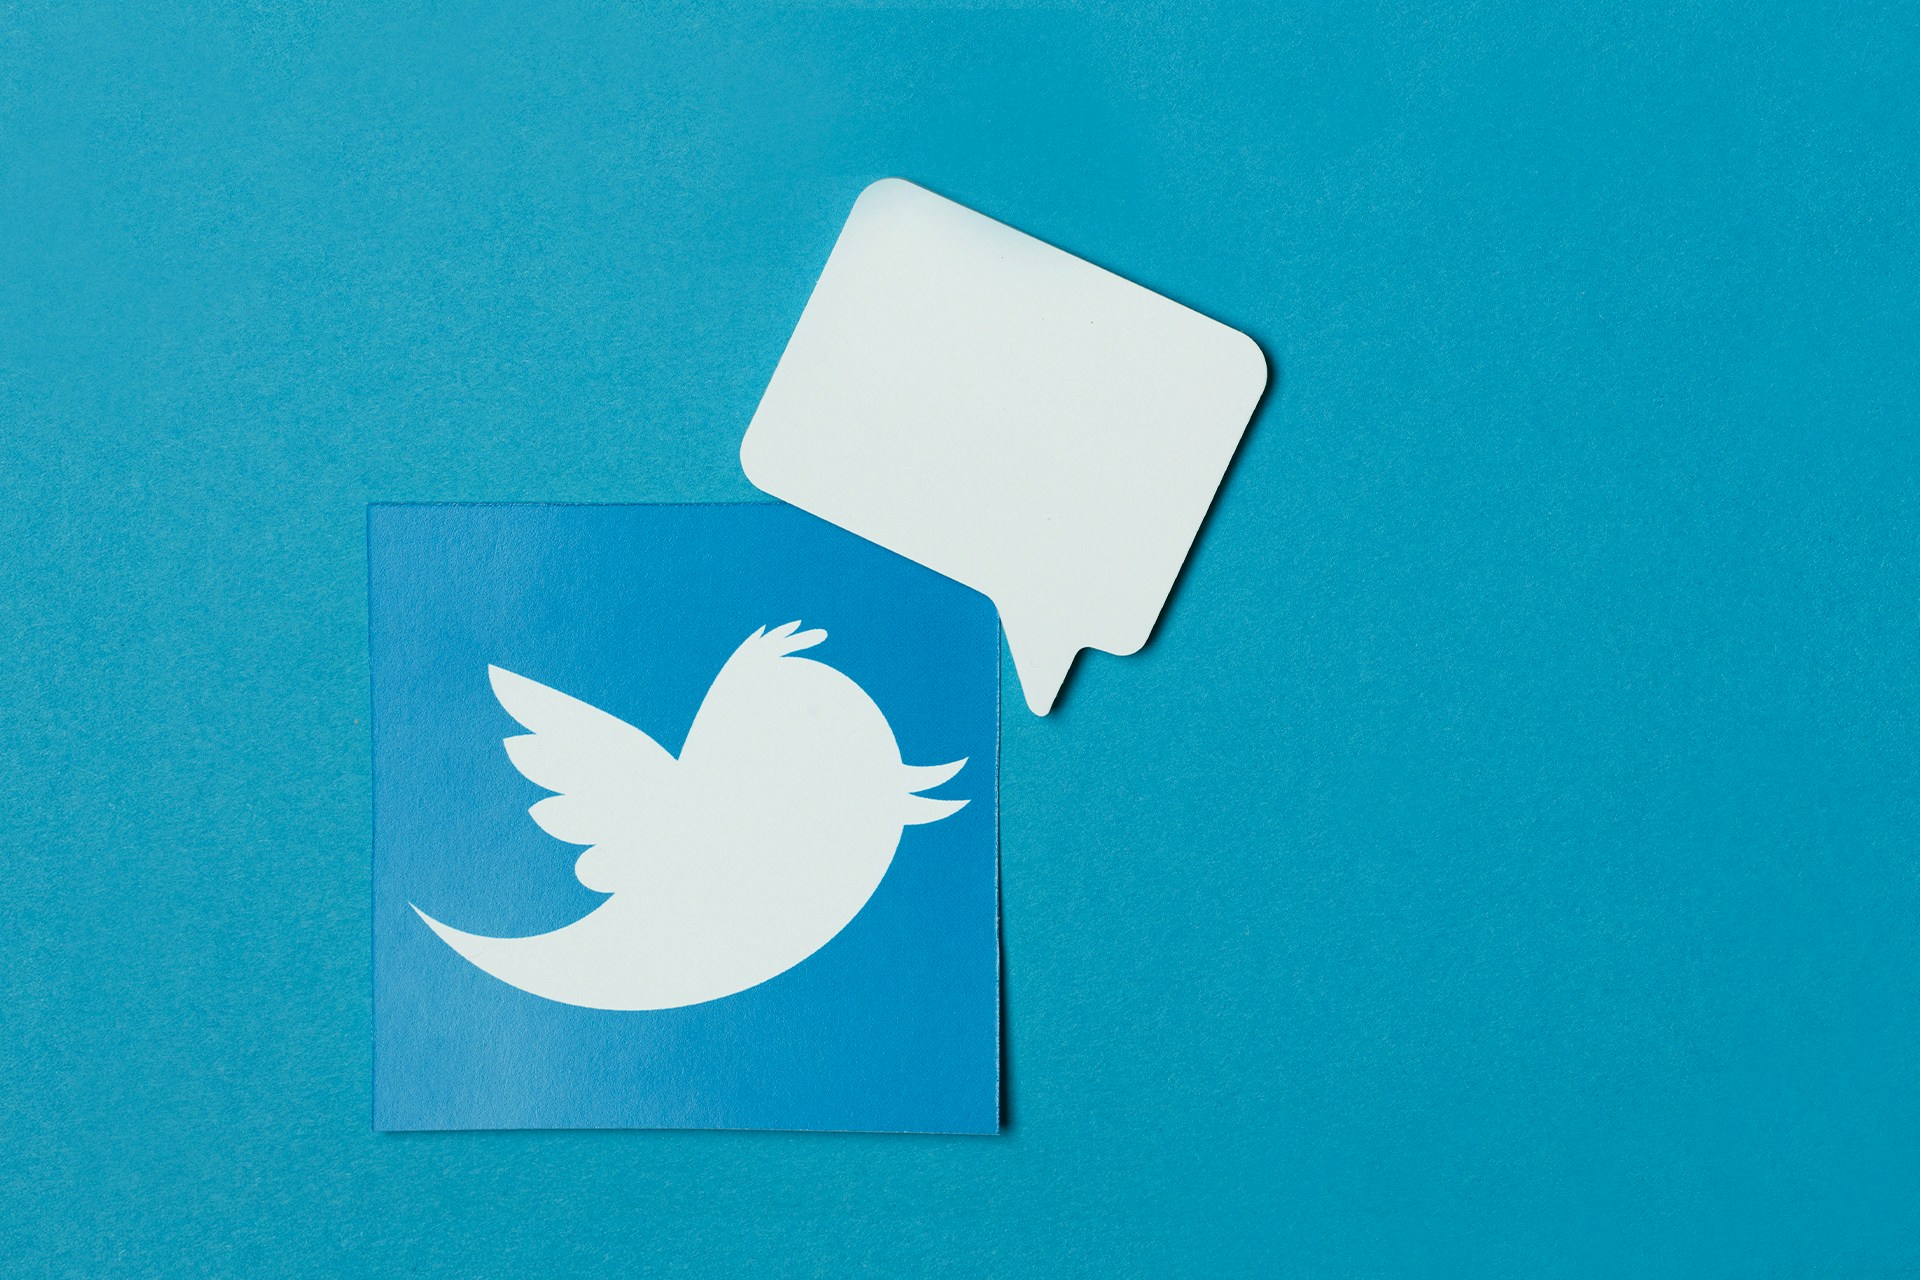 Twitter bird on dark blue background for X / Twitter management